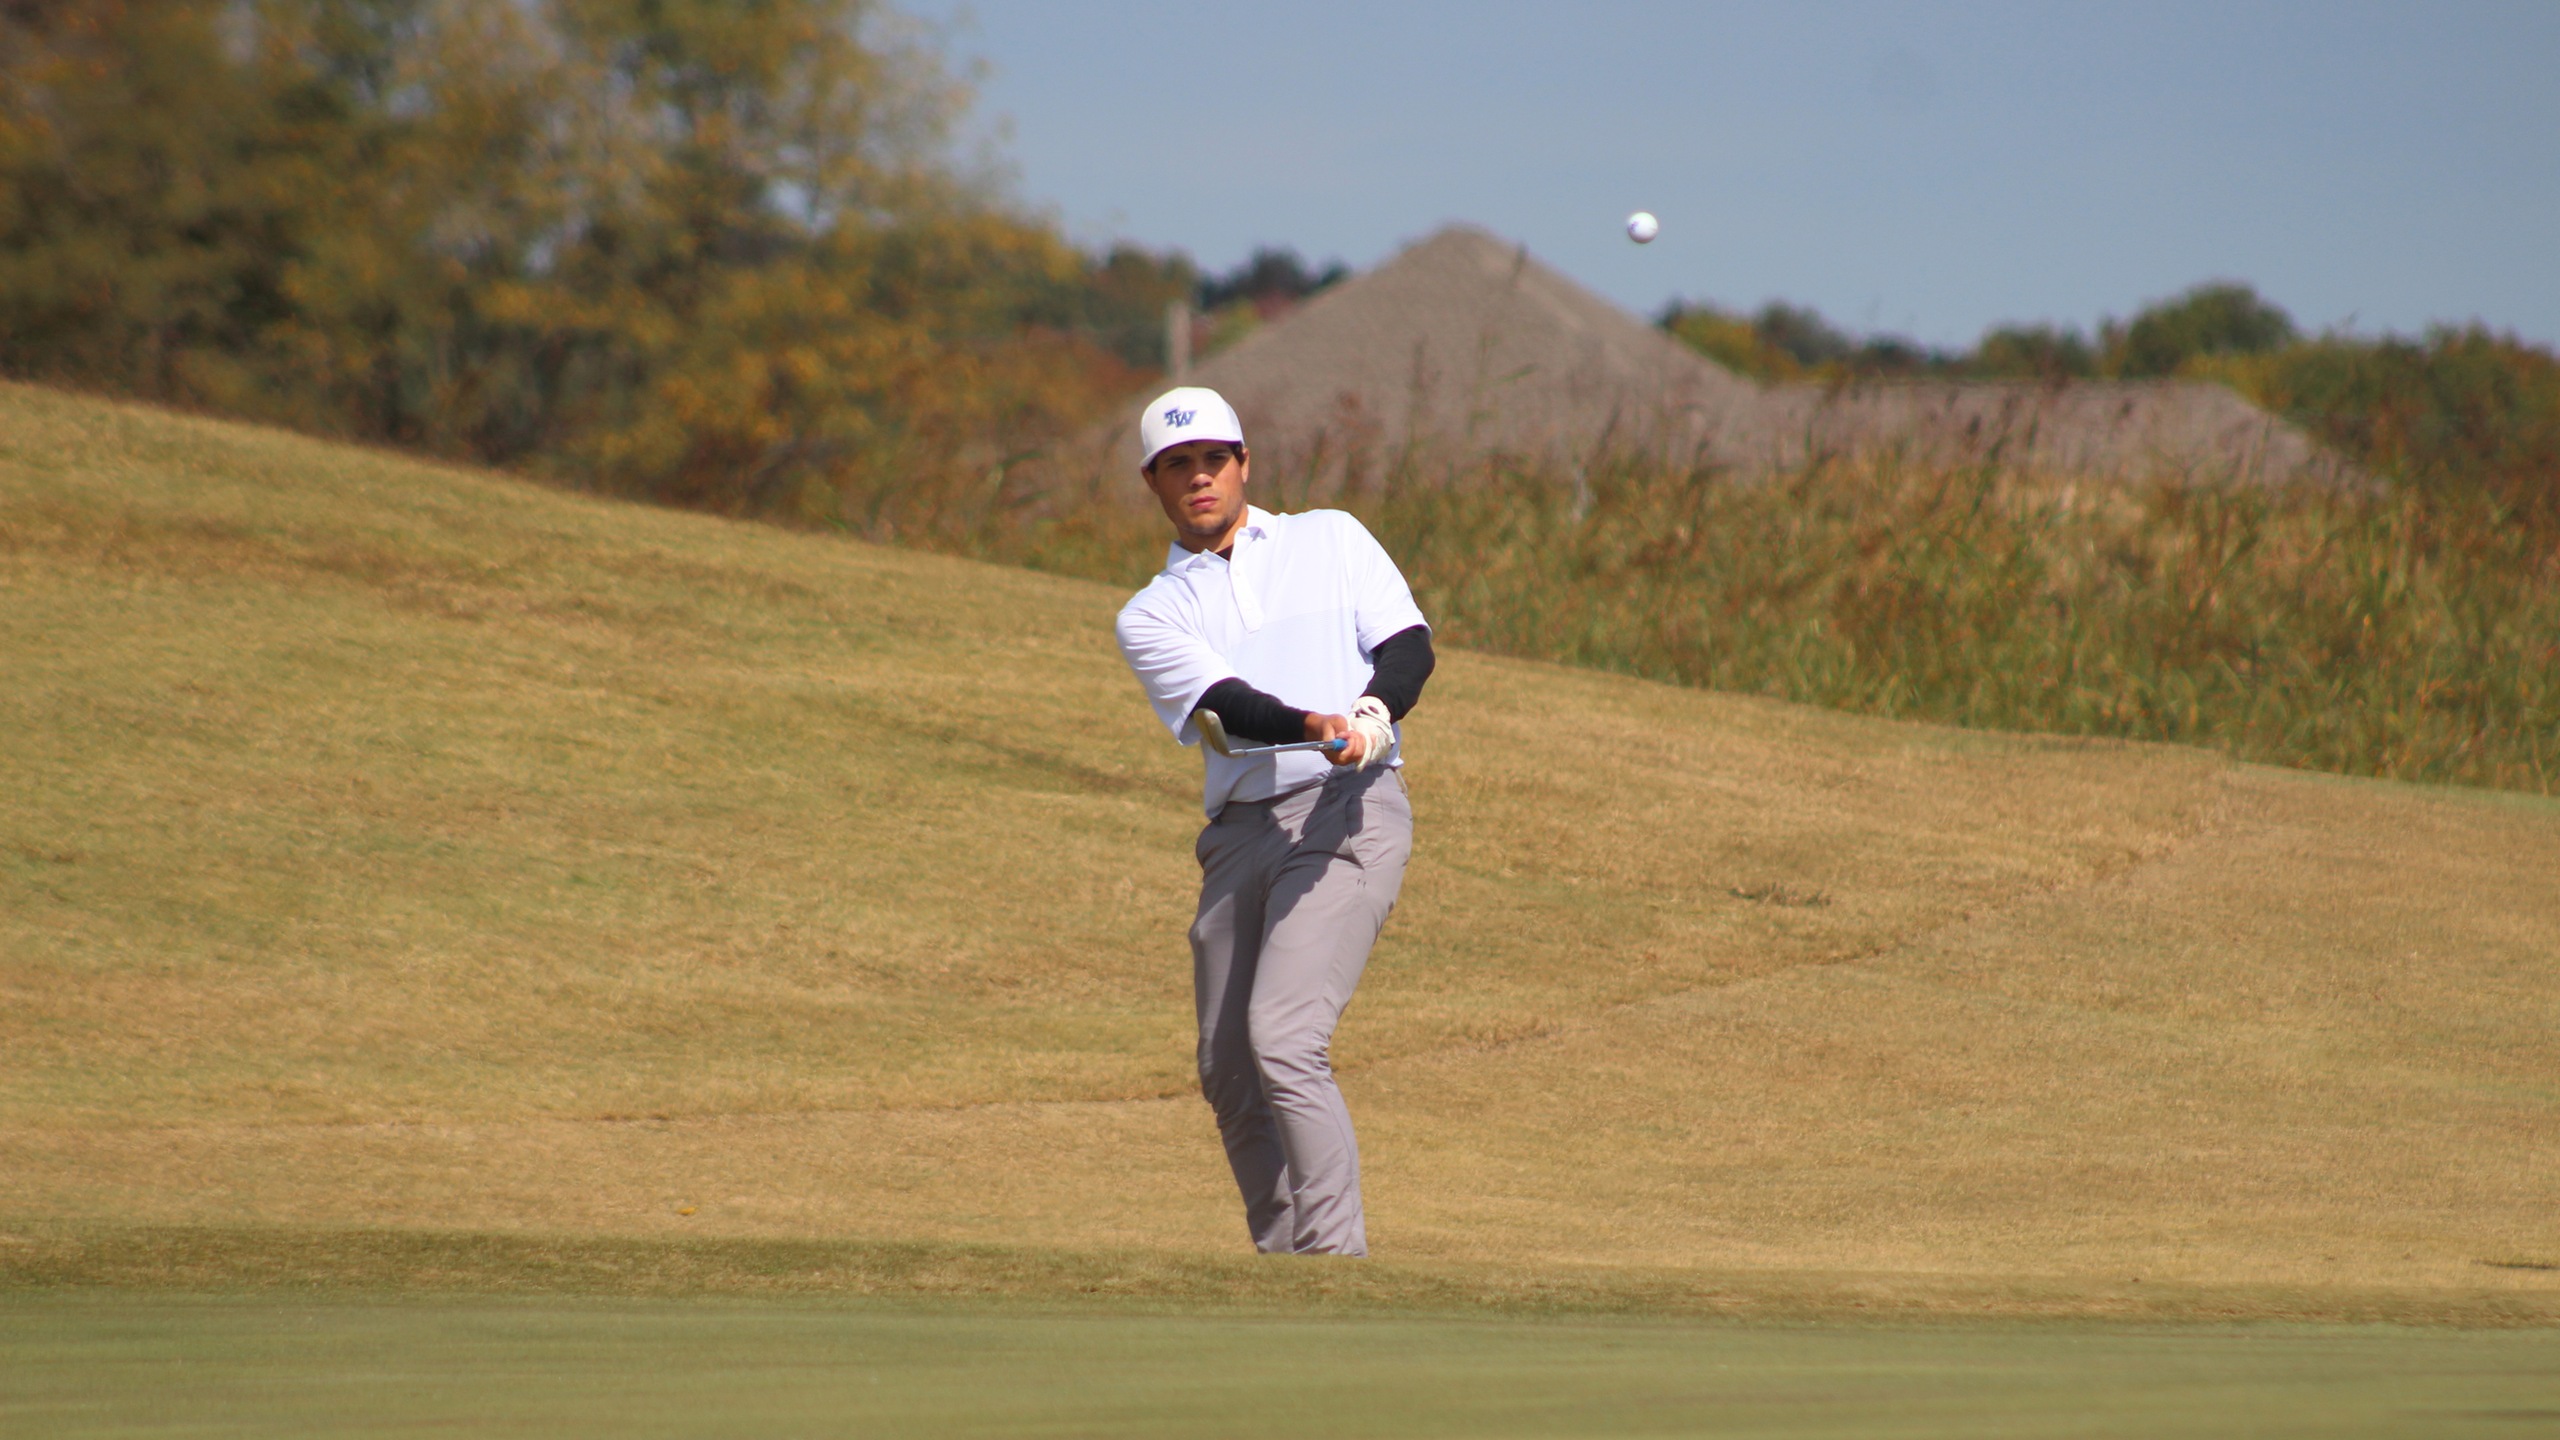 Men's Golf Concludes Fall Season at Bojangles Intercollegiate